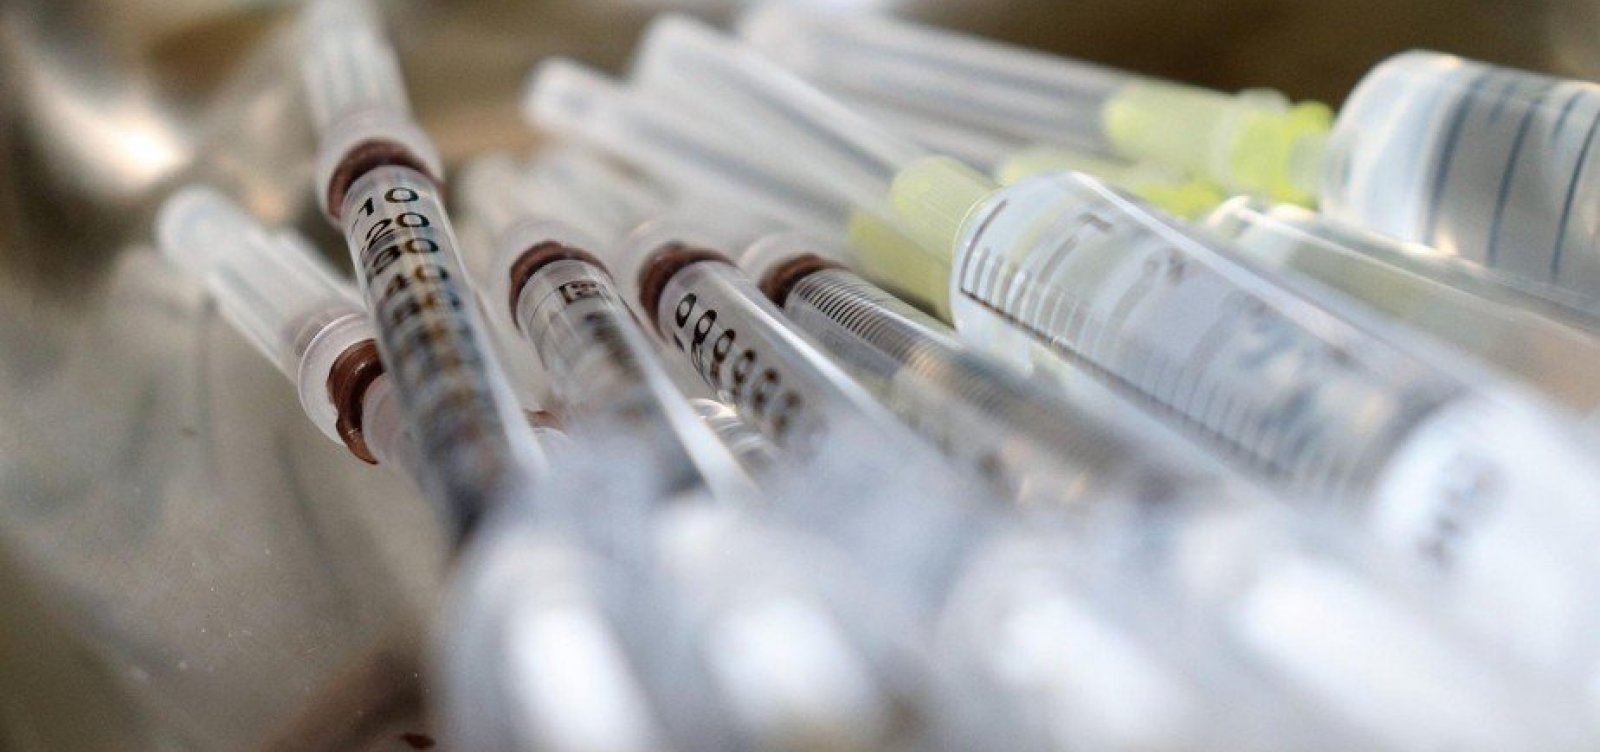 Oxford diz que vacina induziu 'fortes respostas imunes' em idosos na fase 2